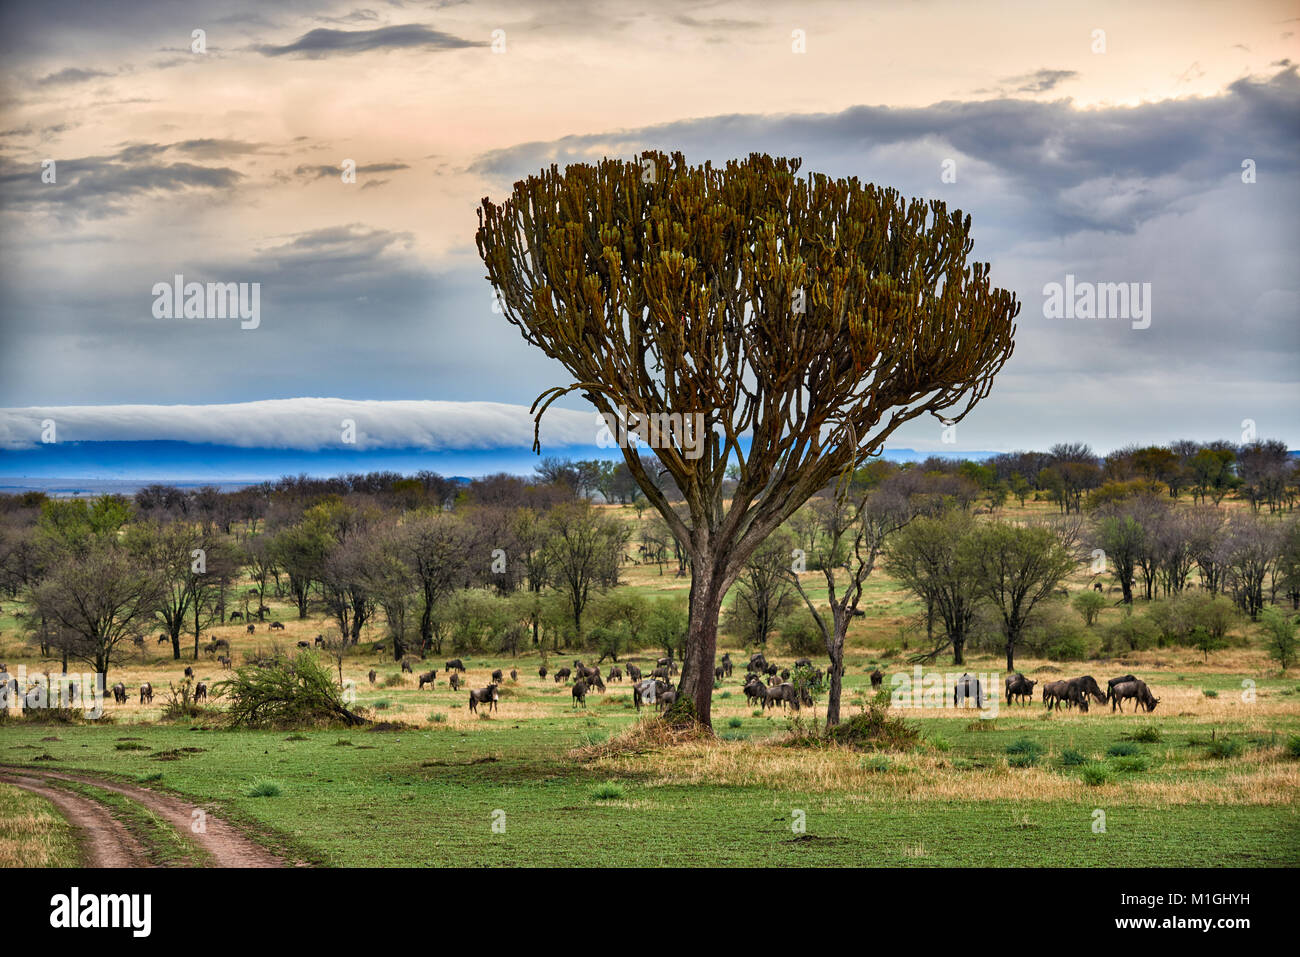 Wolkenformationen in der Great Rift Valley, Landschaft im Serengeti National Park mit blauen wilderbeests, Weltkulturerbe der UNESCO, Tansania, Afrika Stockfoto